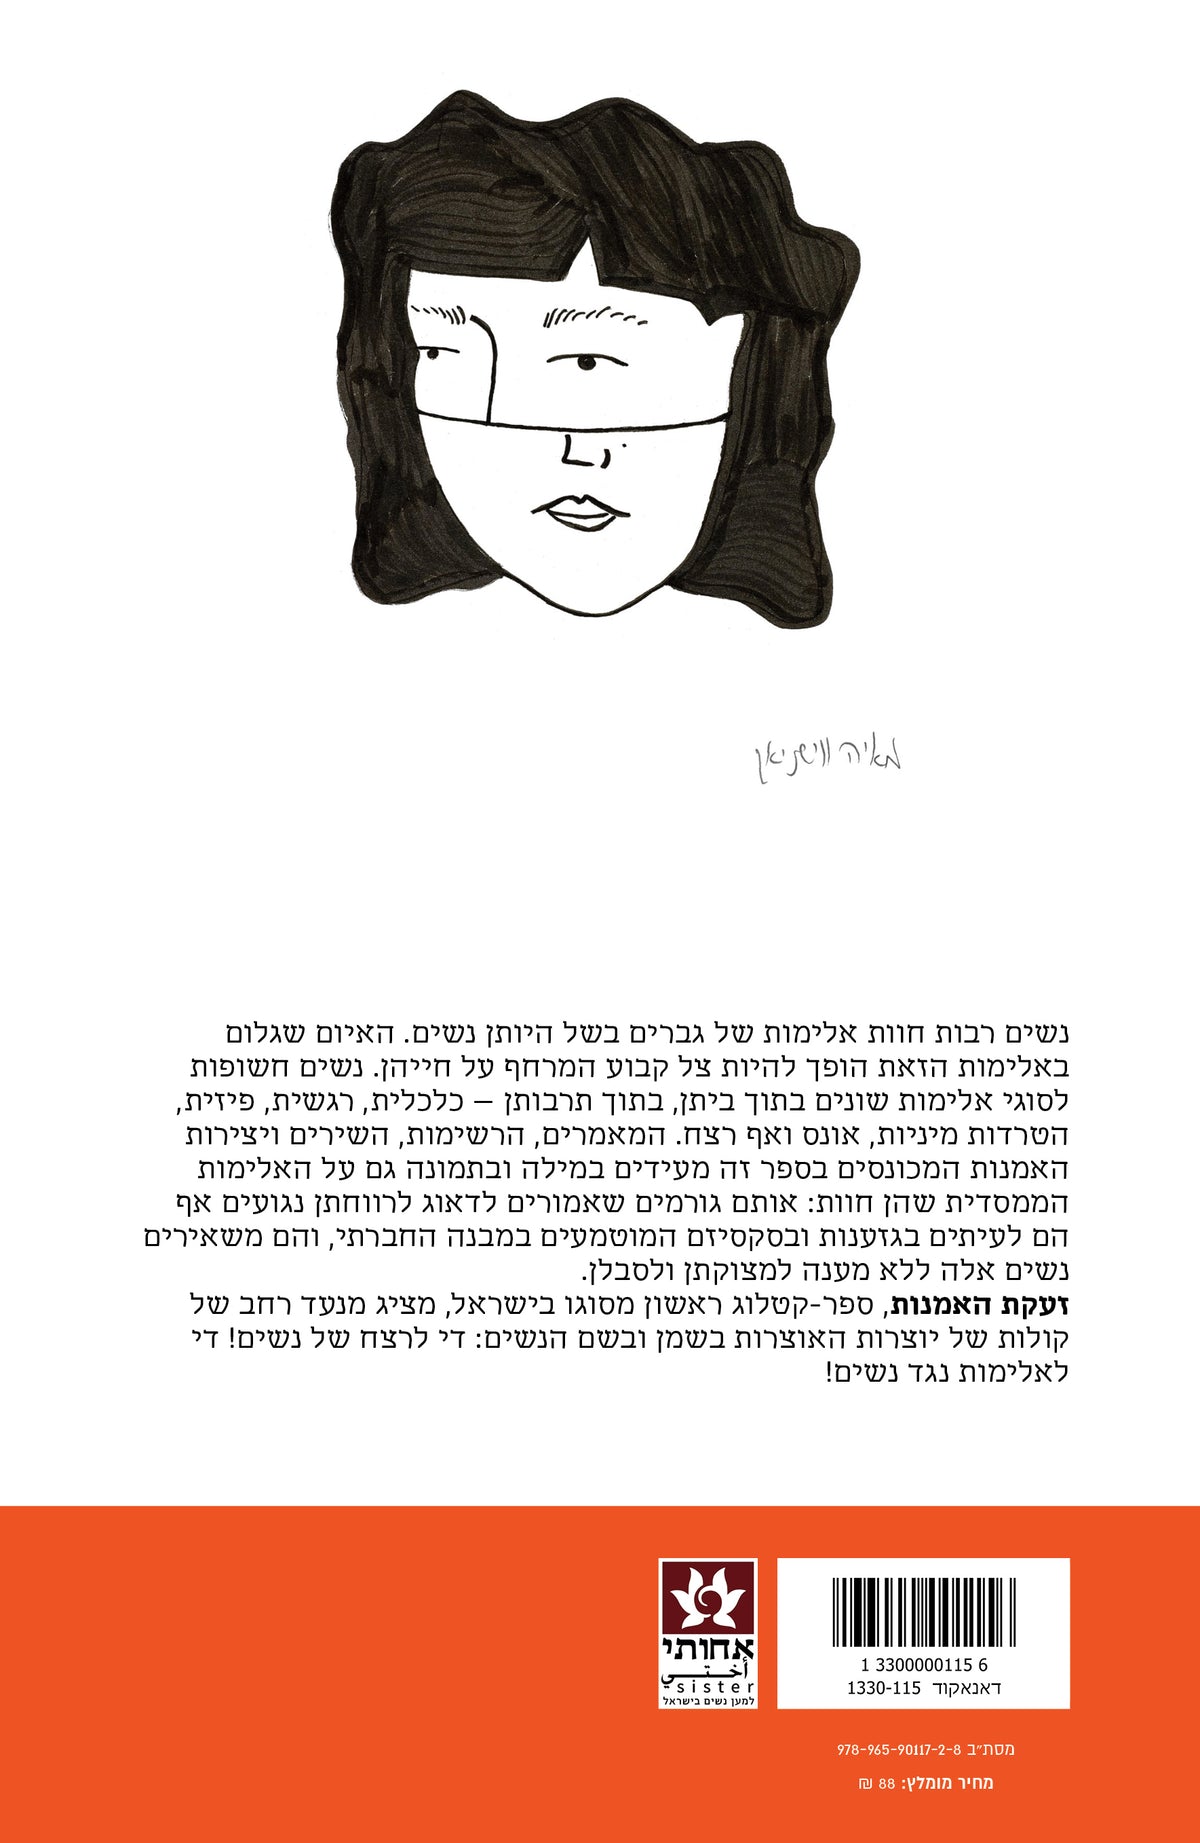 זעקת האמנות - על אלימות נגד נשים בישראל